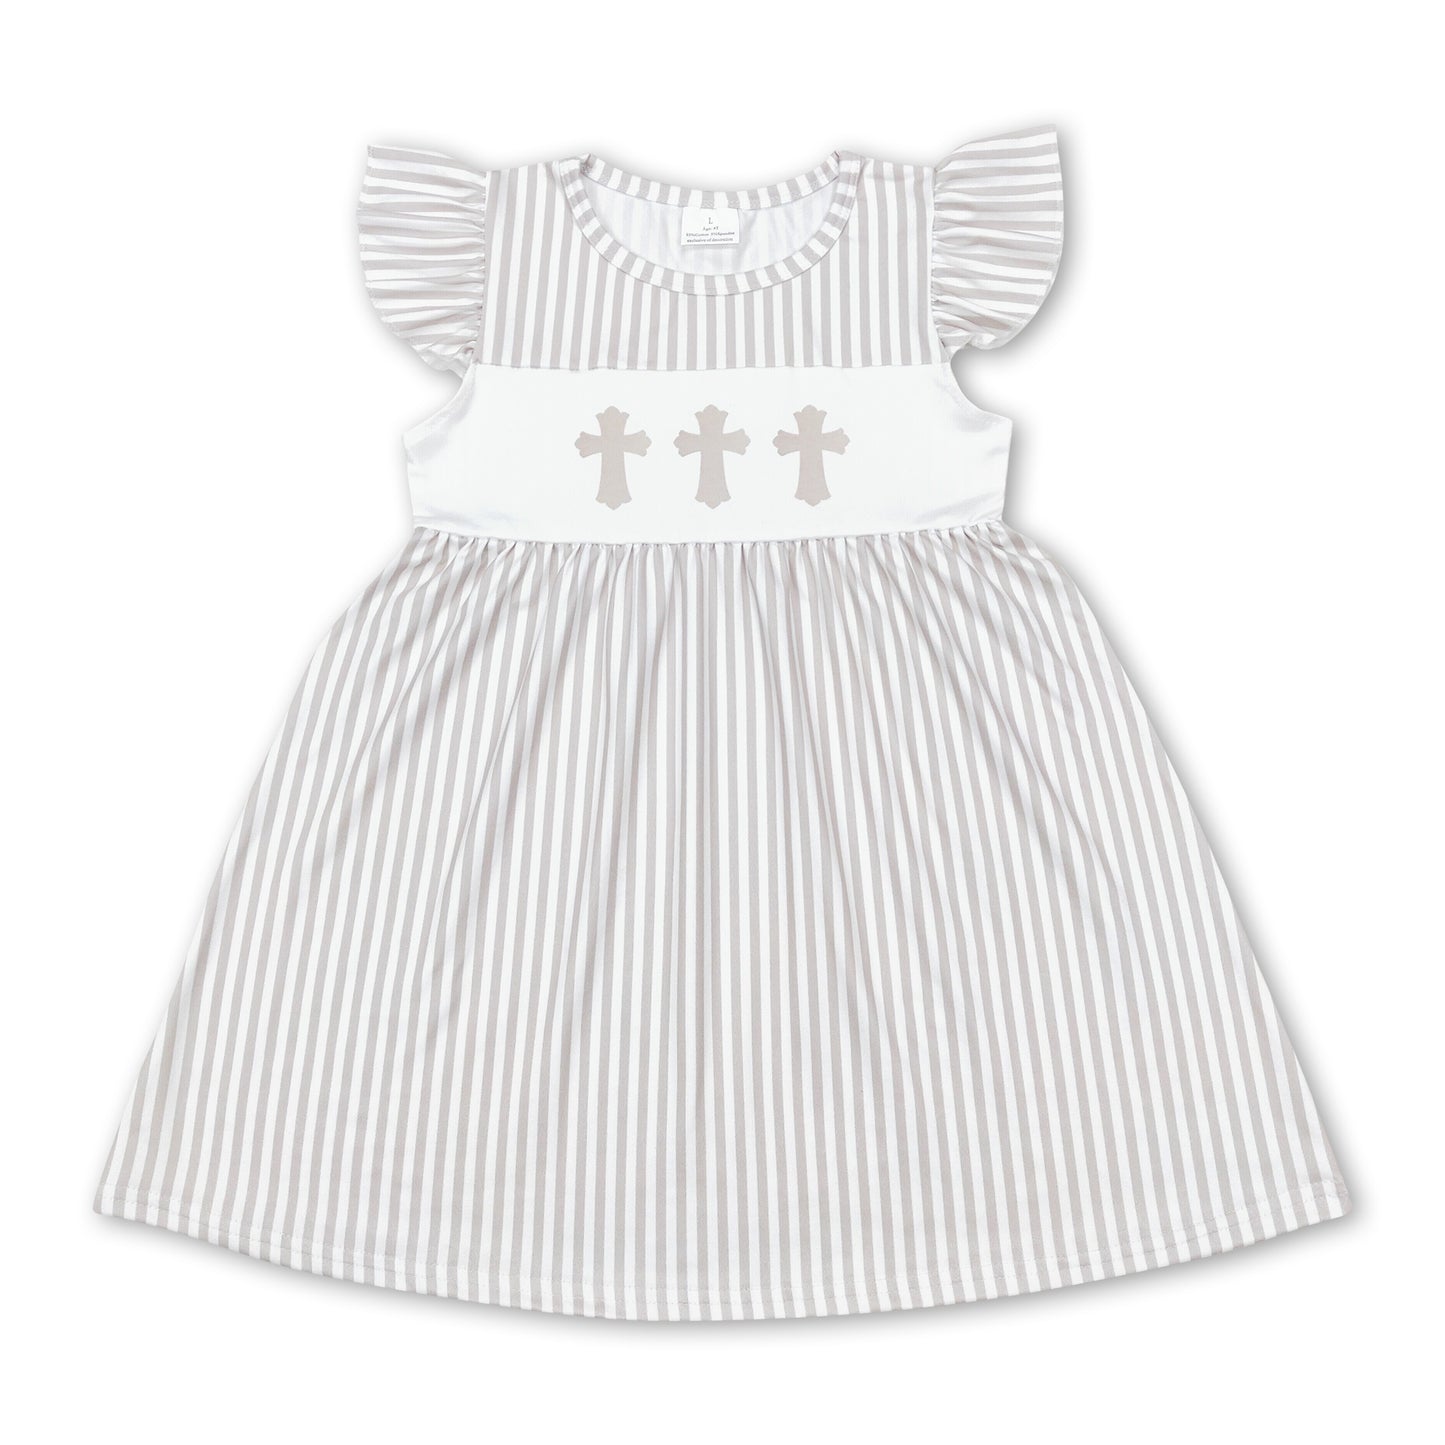 Flutter sleeves khaki stripe cross baby girls easter dress